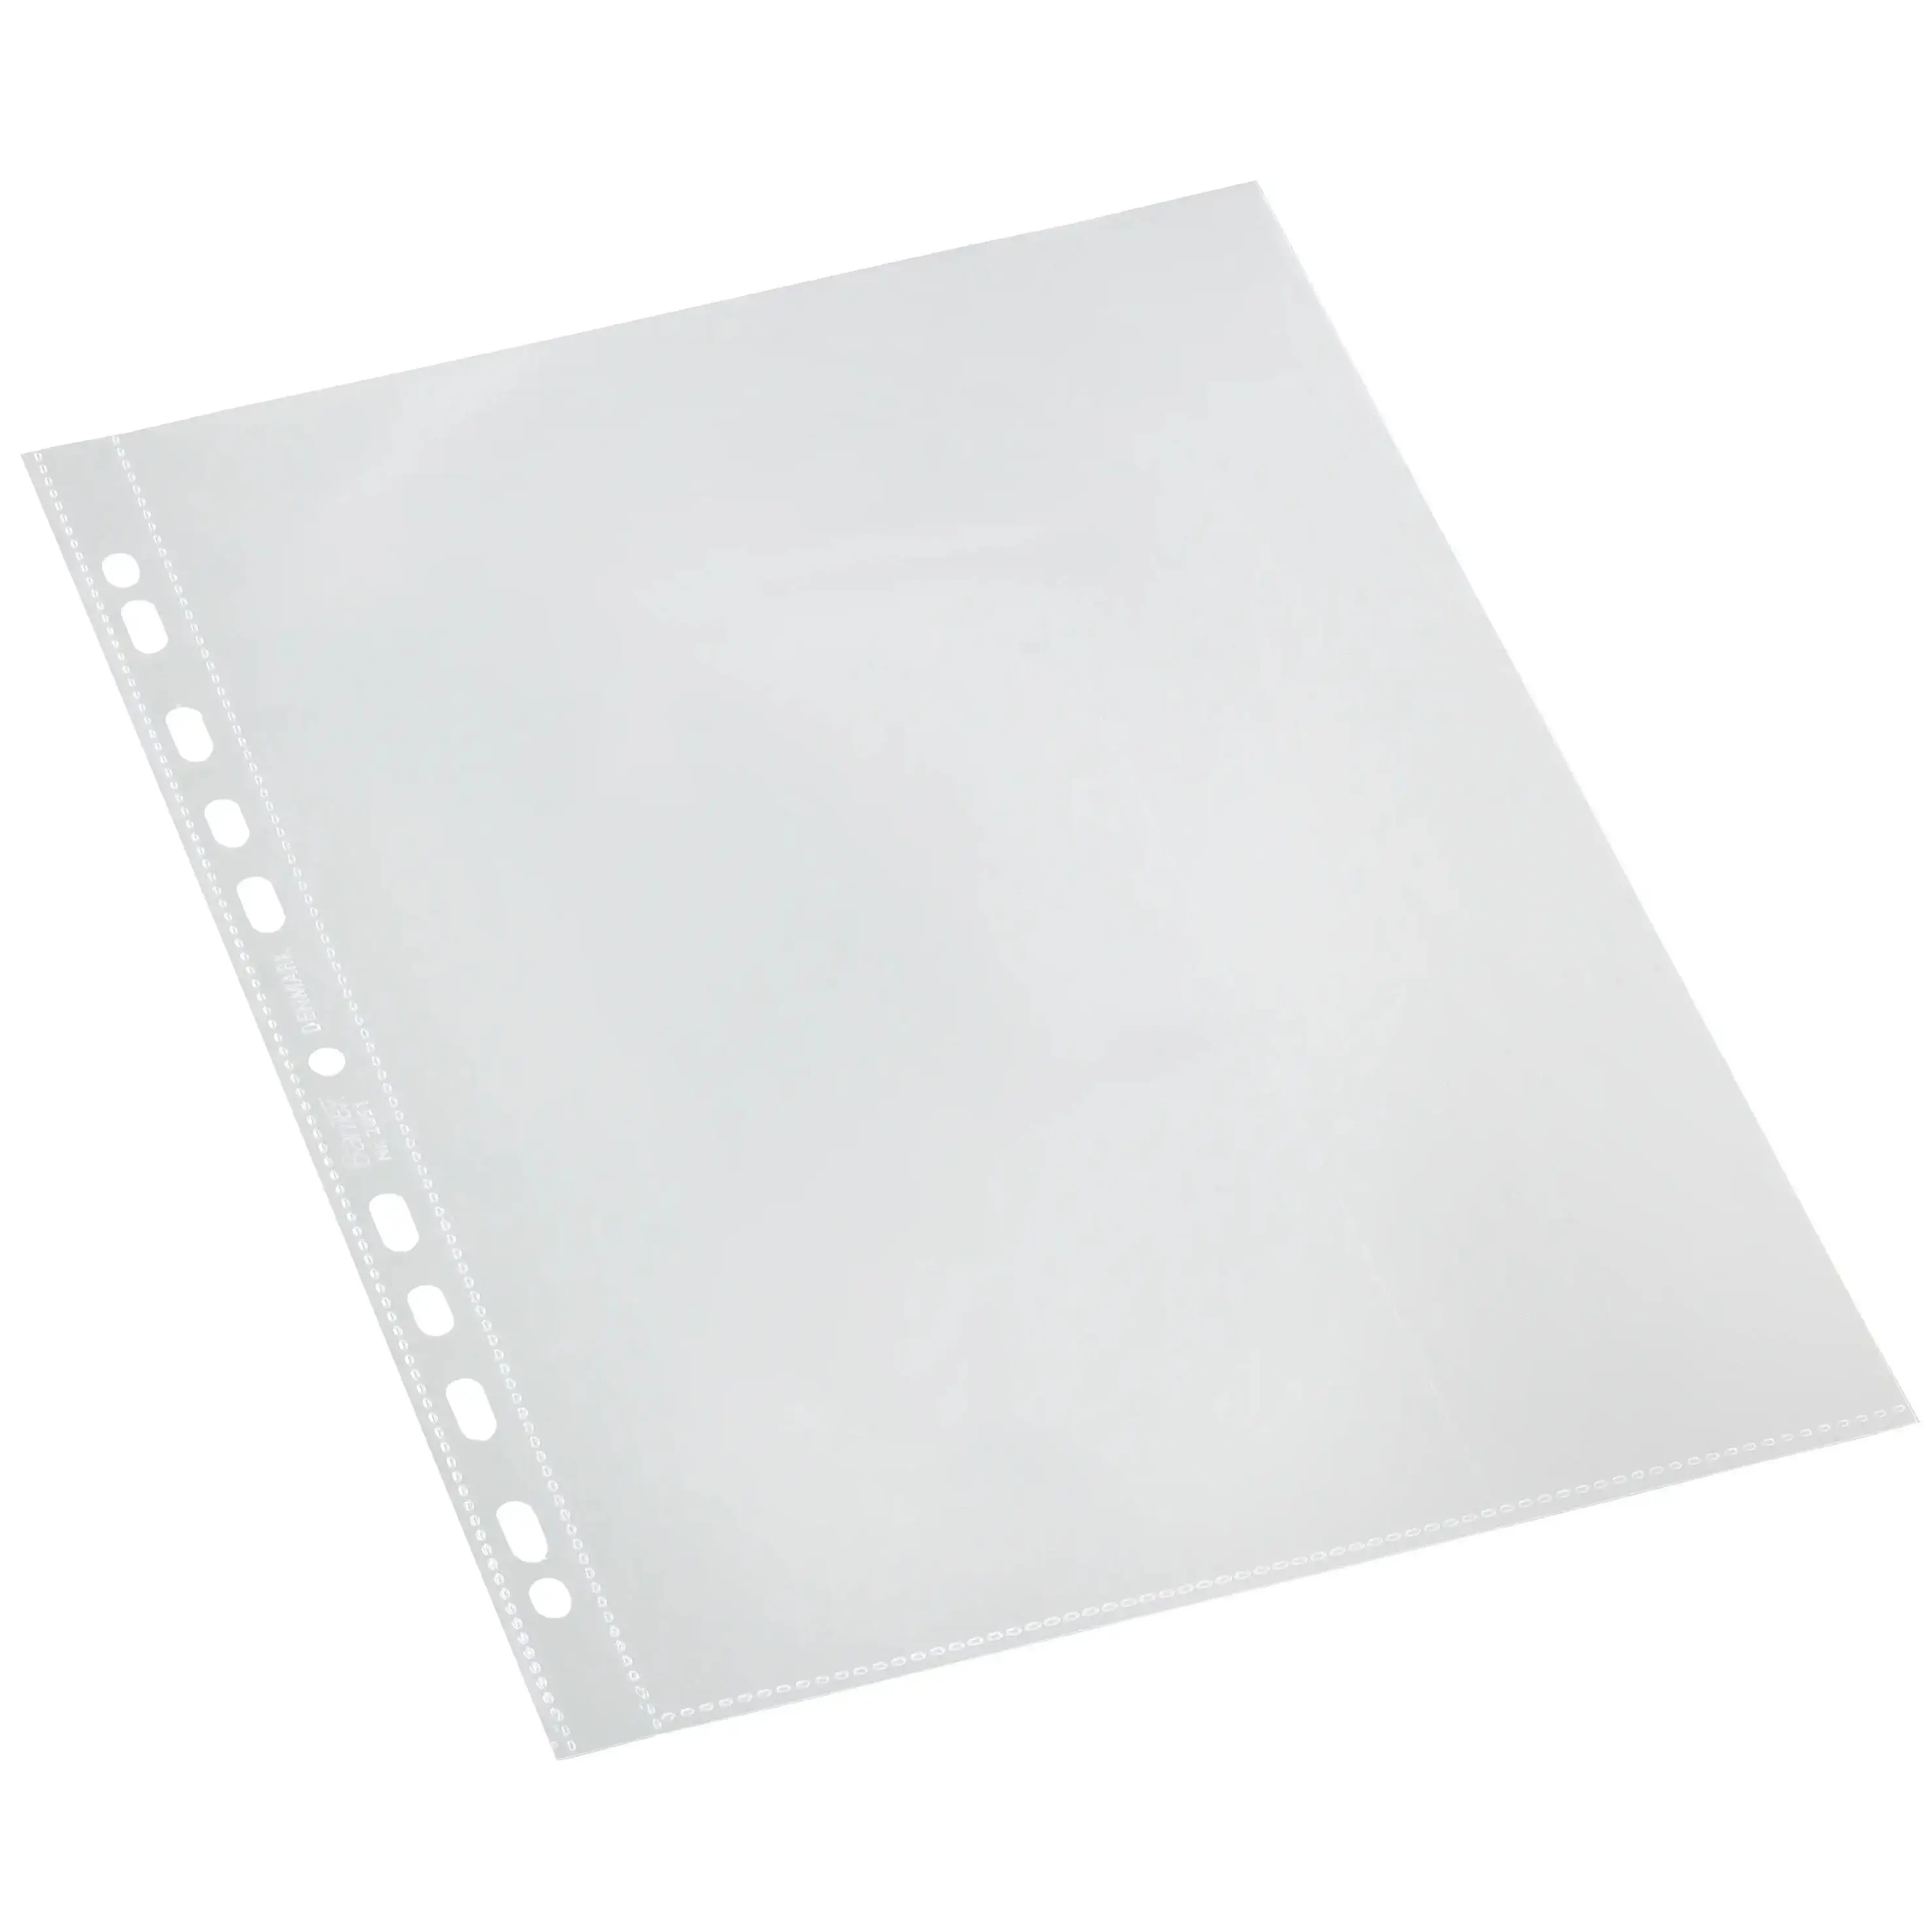 Ramette de Papier Blanc A4 80 g/m² Xerox Performer 003R90649